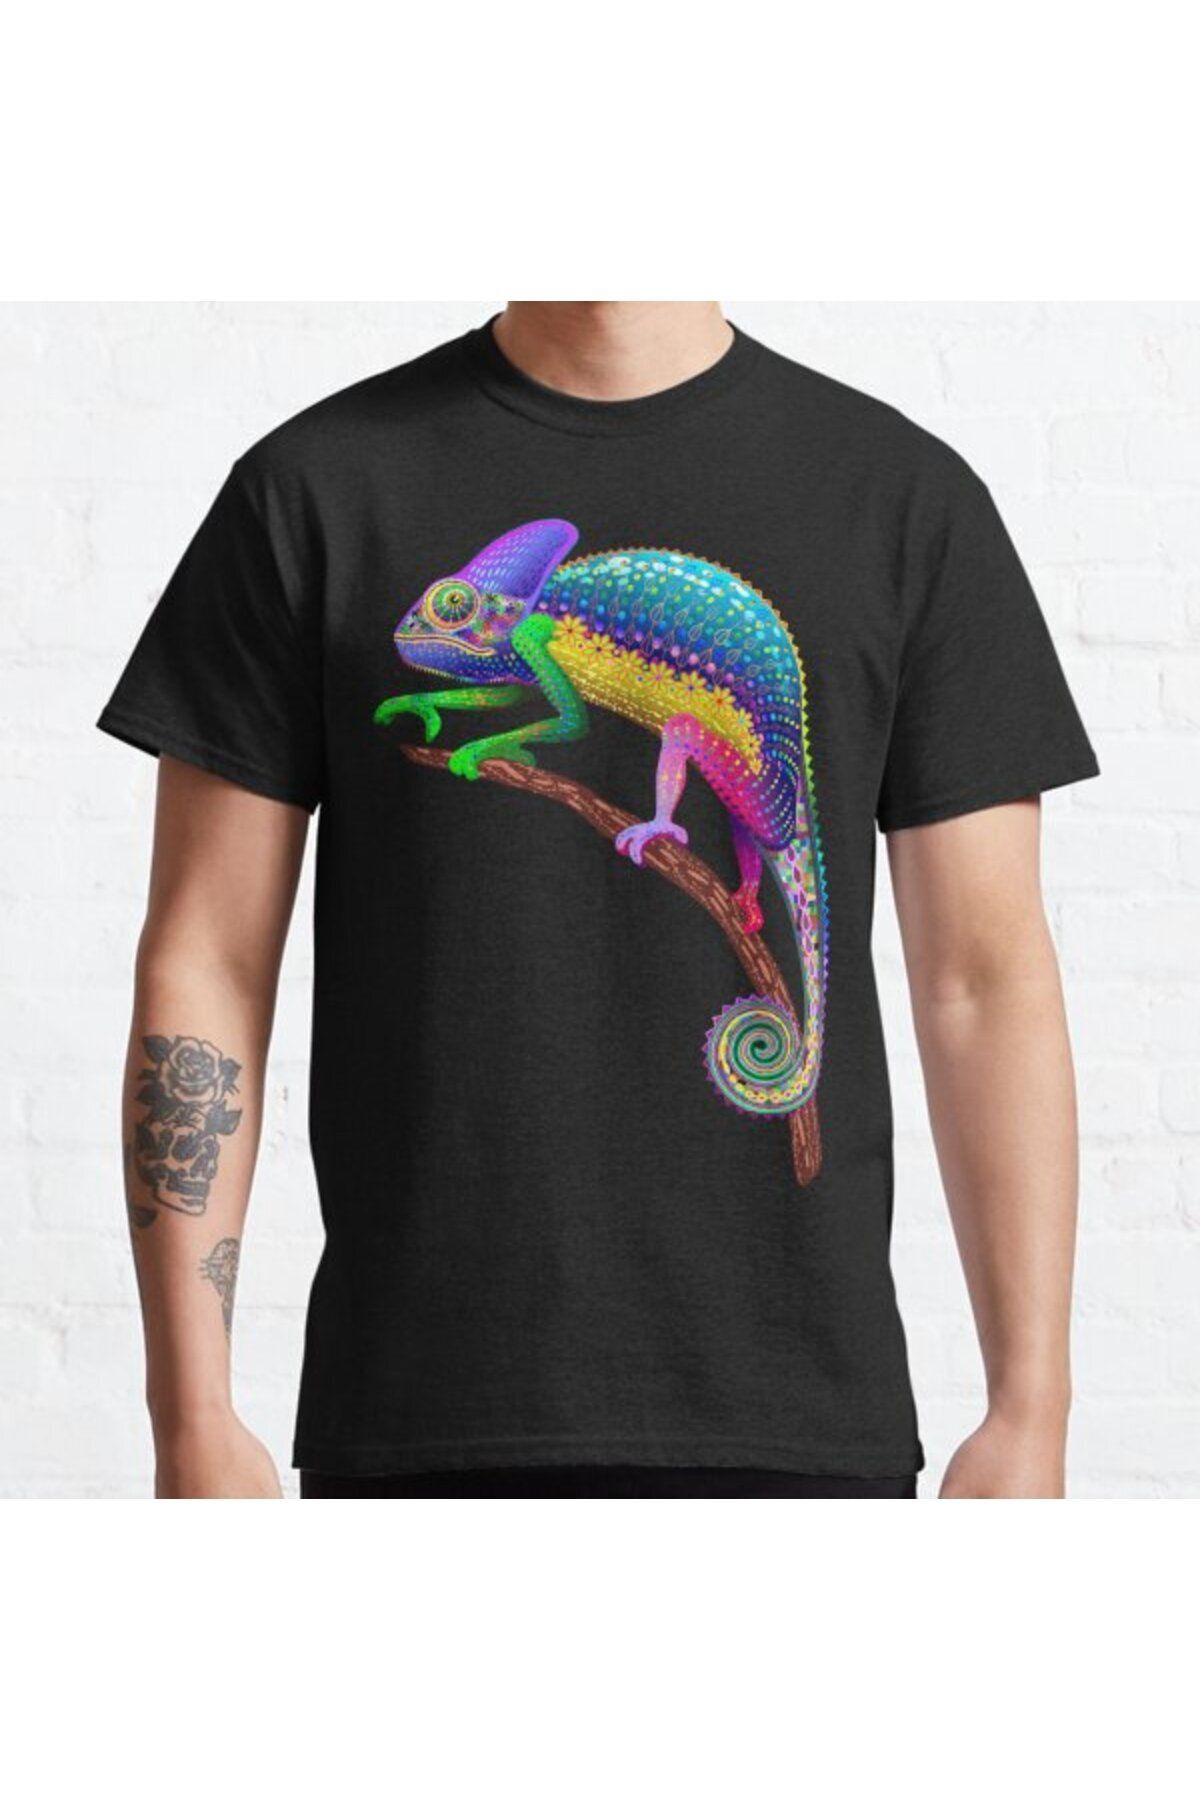 ZOKAWEAR Bol Kalıp Unisex Chameleon Fantasy Rainbow Colors Tasarım Baskılı Tshirt